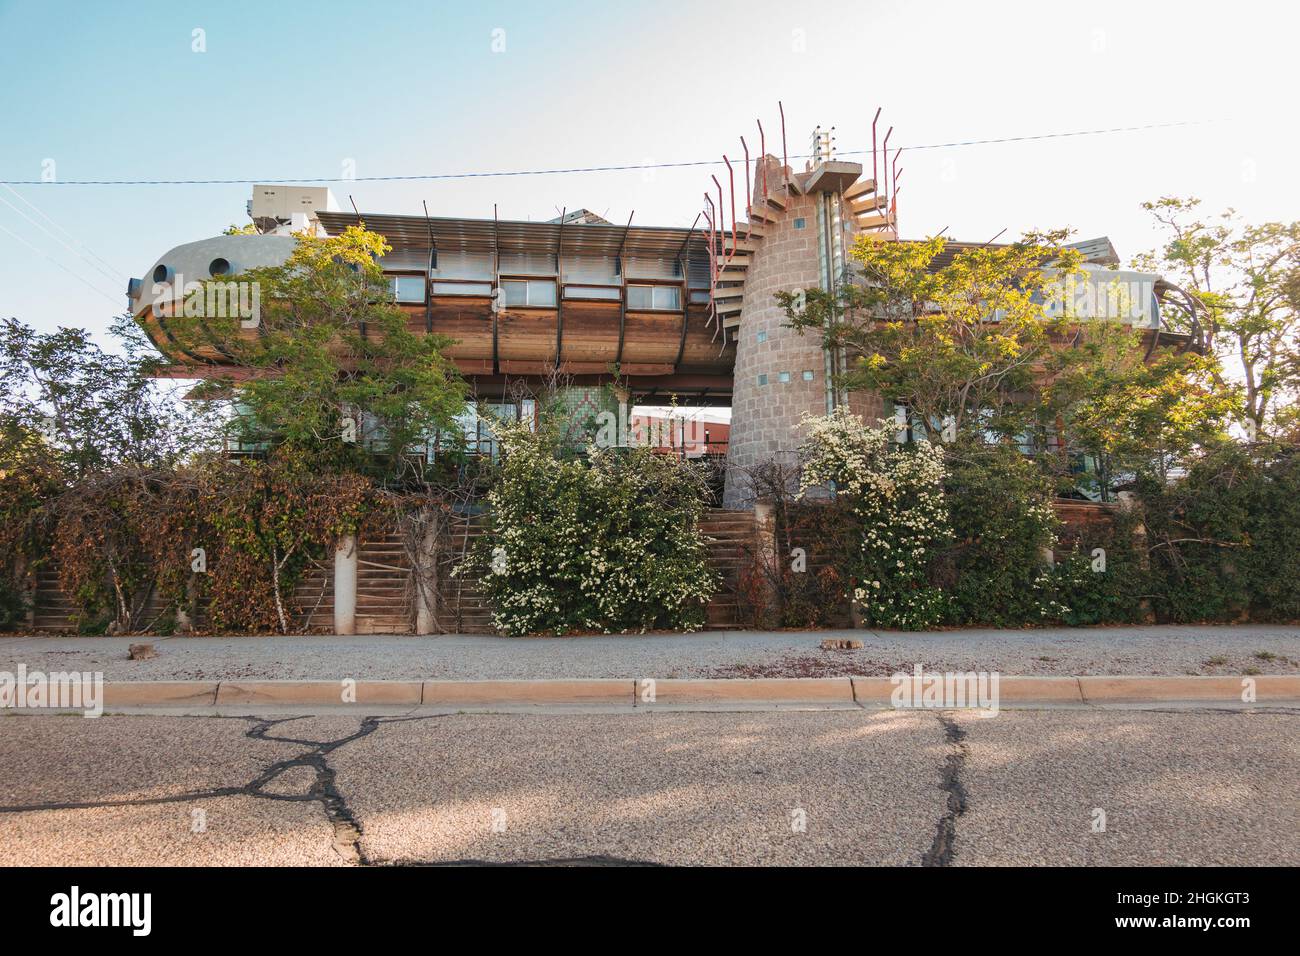 La peculiar 'casa de la nave', una residencia y estudio del arquitecto Bart Prince, construido en 1984 en Albuquerque, Nuevo México Foto de stock